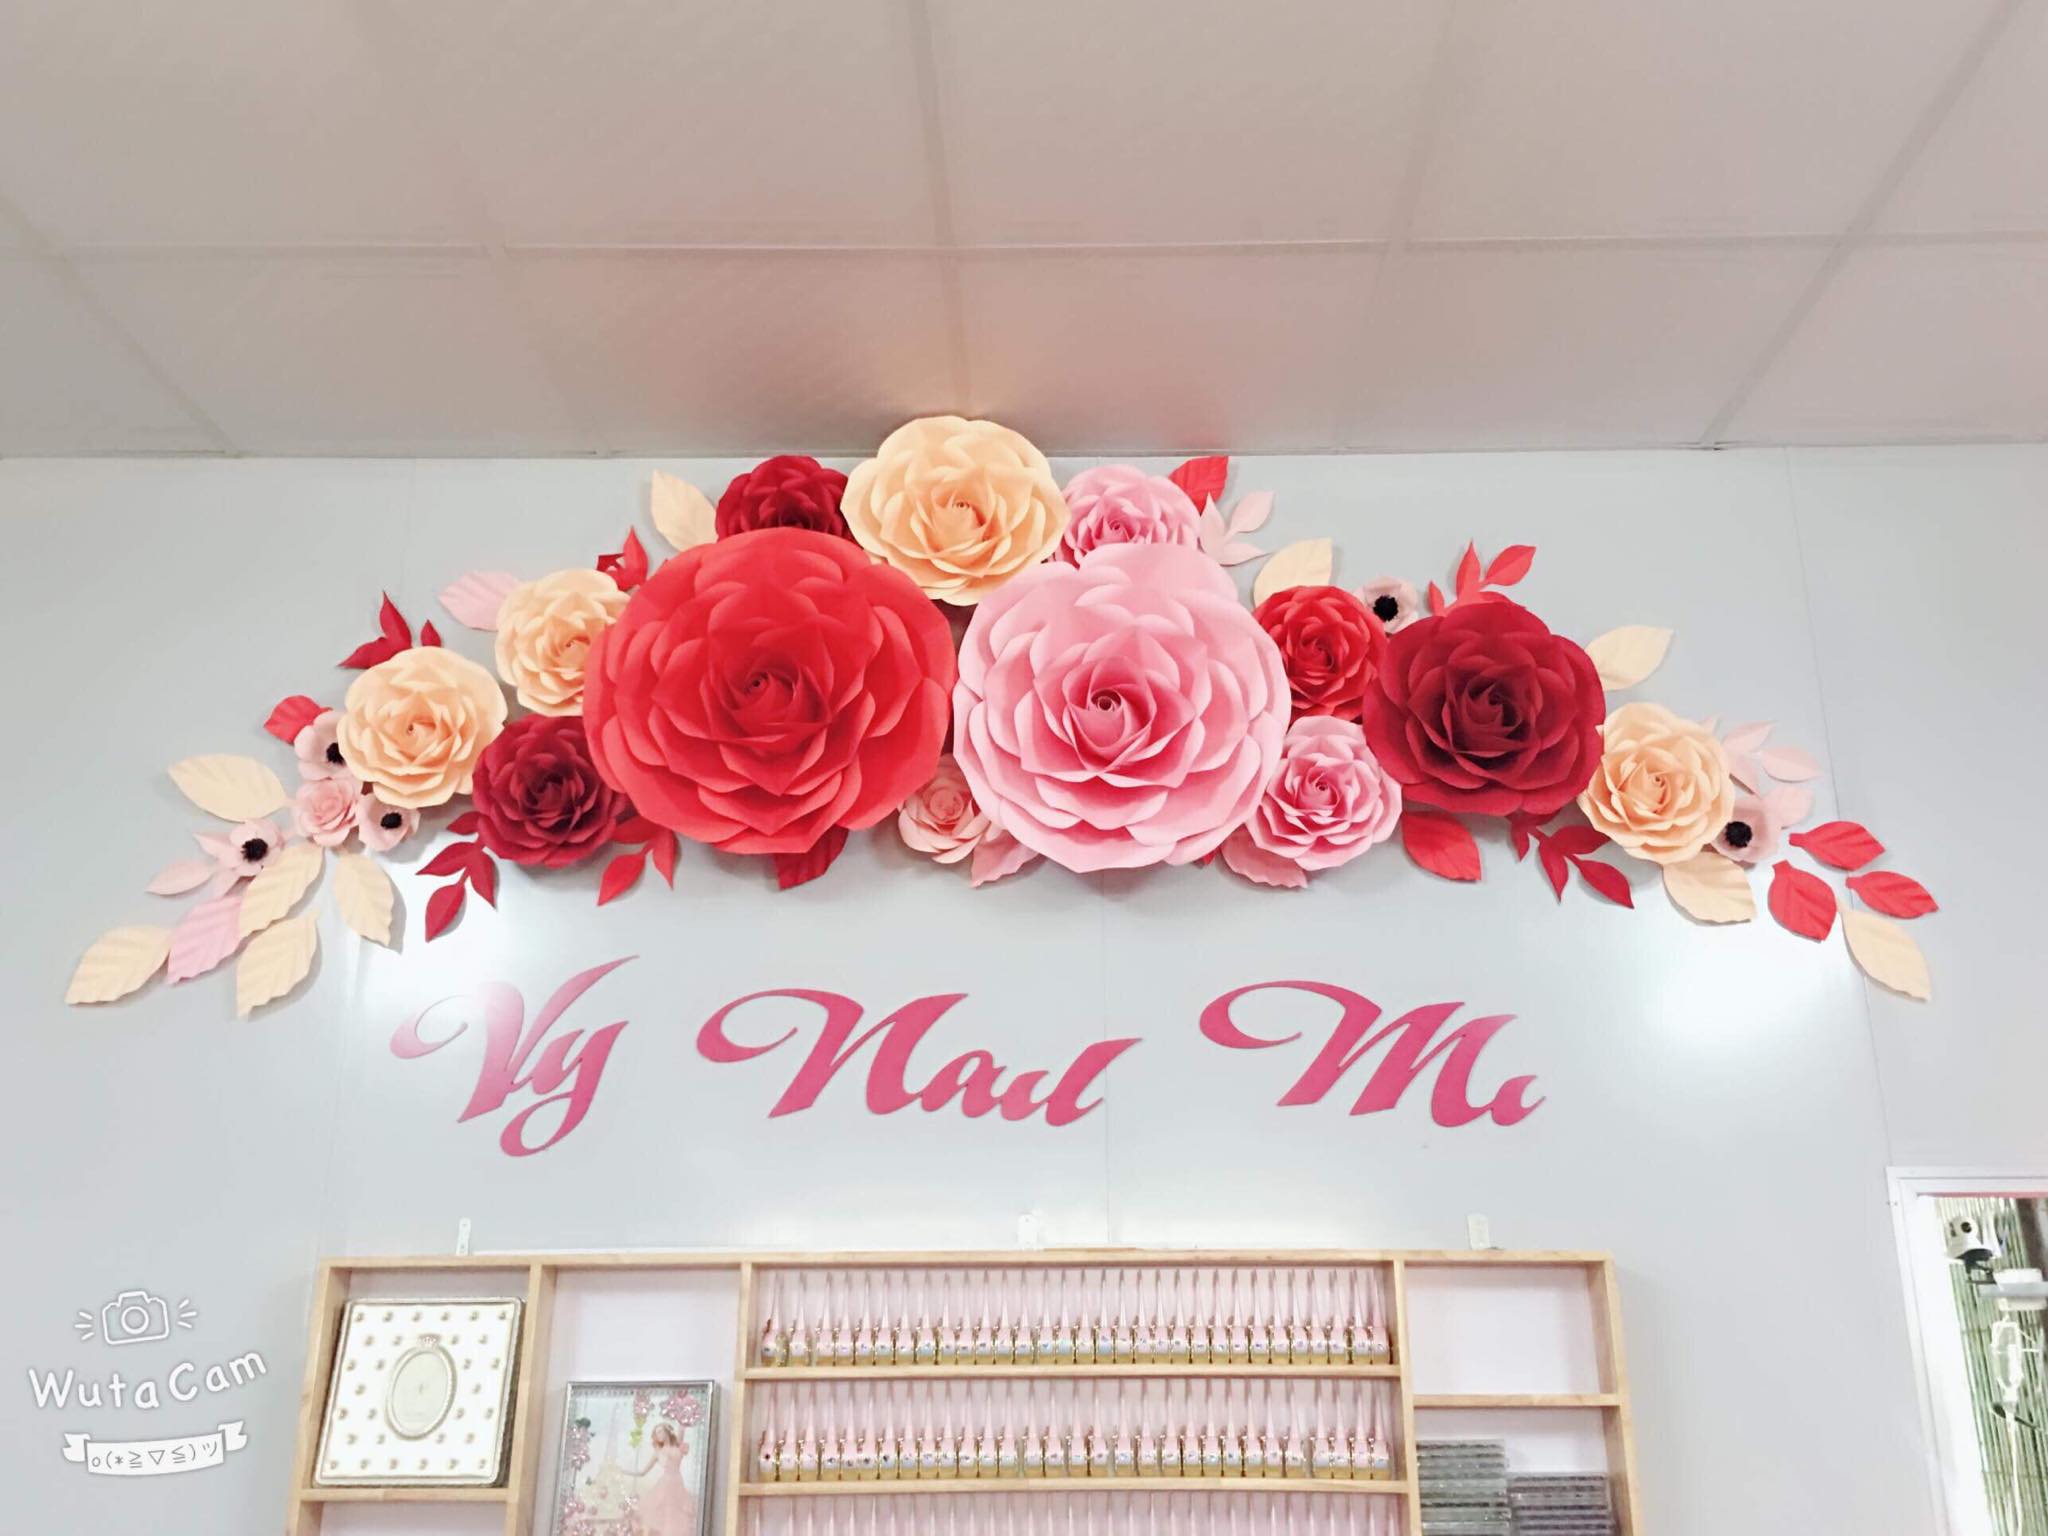 Backdrop tông màu hồng đỏ với hoa sáp là một lựa chọn hoàn hảo để tạo ra không gian chụp hình đầy nghệ thuật và sang trọng. Những bông hoa sáp mềm mại và những chi tiết tỉ mỉ, sẽ làm cho bức ảnh cưới của bạn trở nên thật ấn tượng và đáng nhớ.